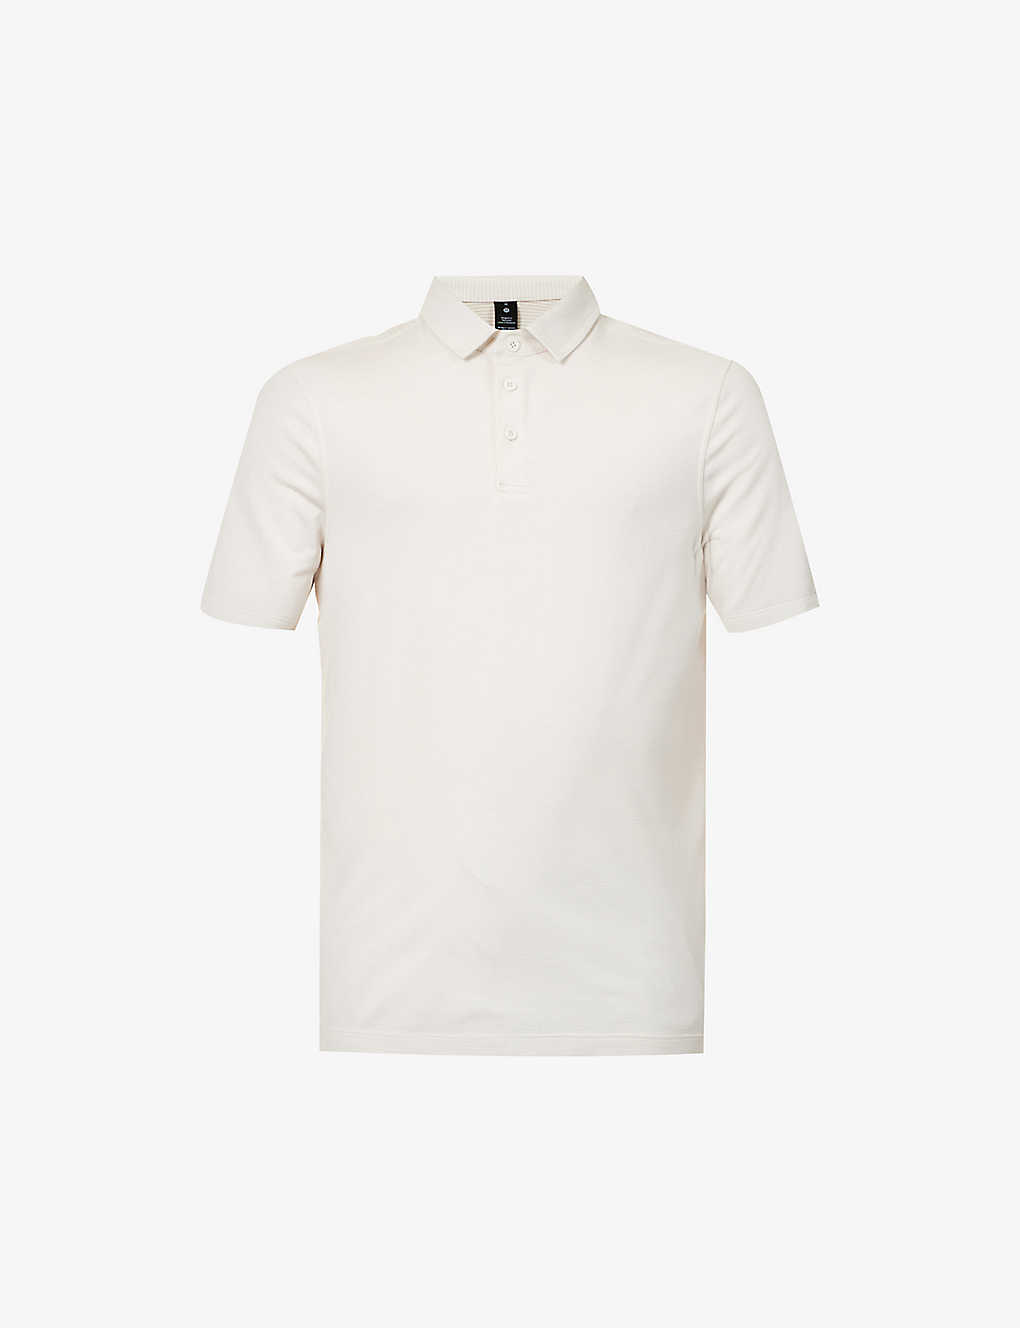 Lululemon Evolution Short Sleeve Polo Shirt Pique Fabric In White